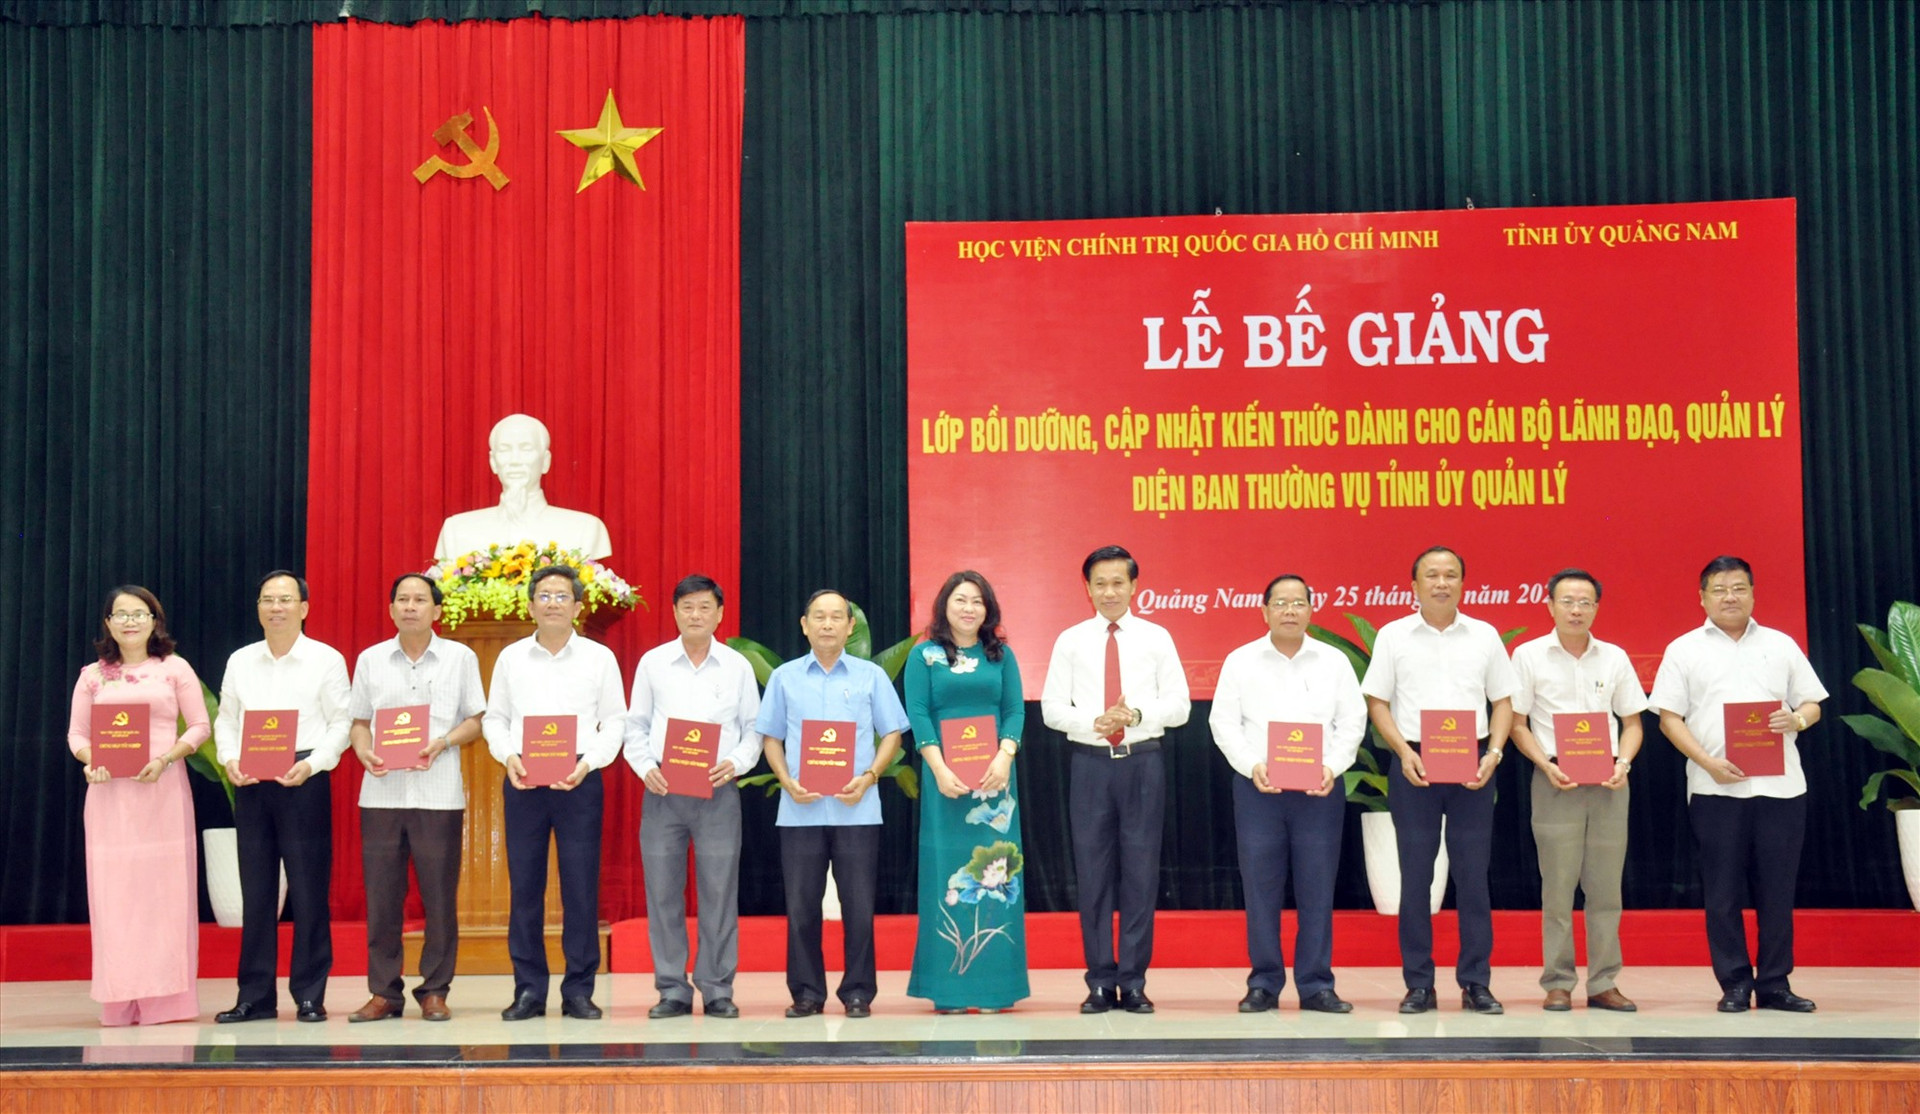 Tỉnh ủy phối hợp Học viện Chính trị quốc gia Hồ Chí Minh tổ chức lớp bồi dưỡng, cập nhật kiến thức dành cho cán bộ lãnh đạo, quản lý thuộc diện Ban Thường vụ Tỉnh ủy quản lý năm 2022. Ảnh: N.ĐOAN